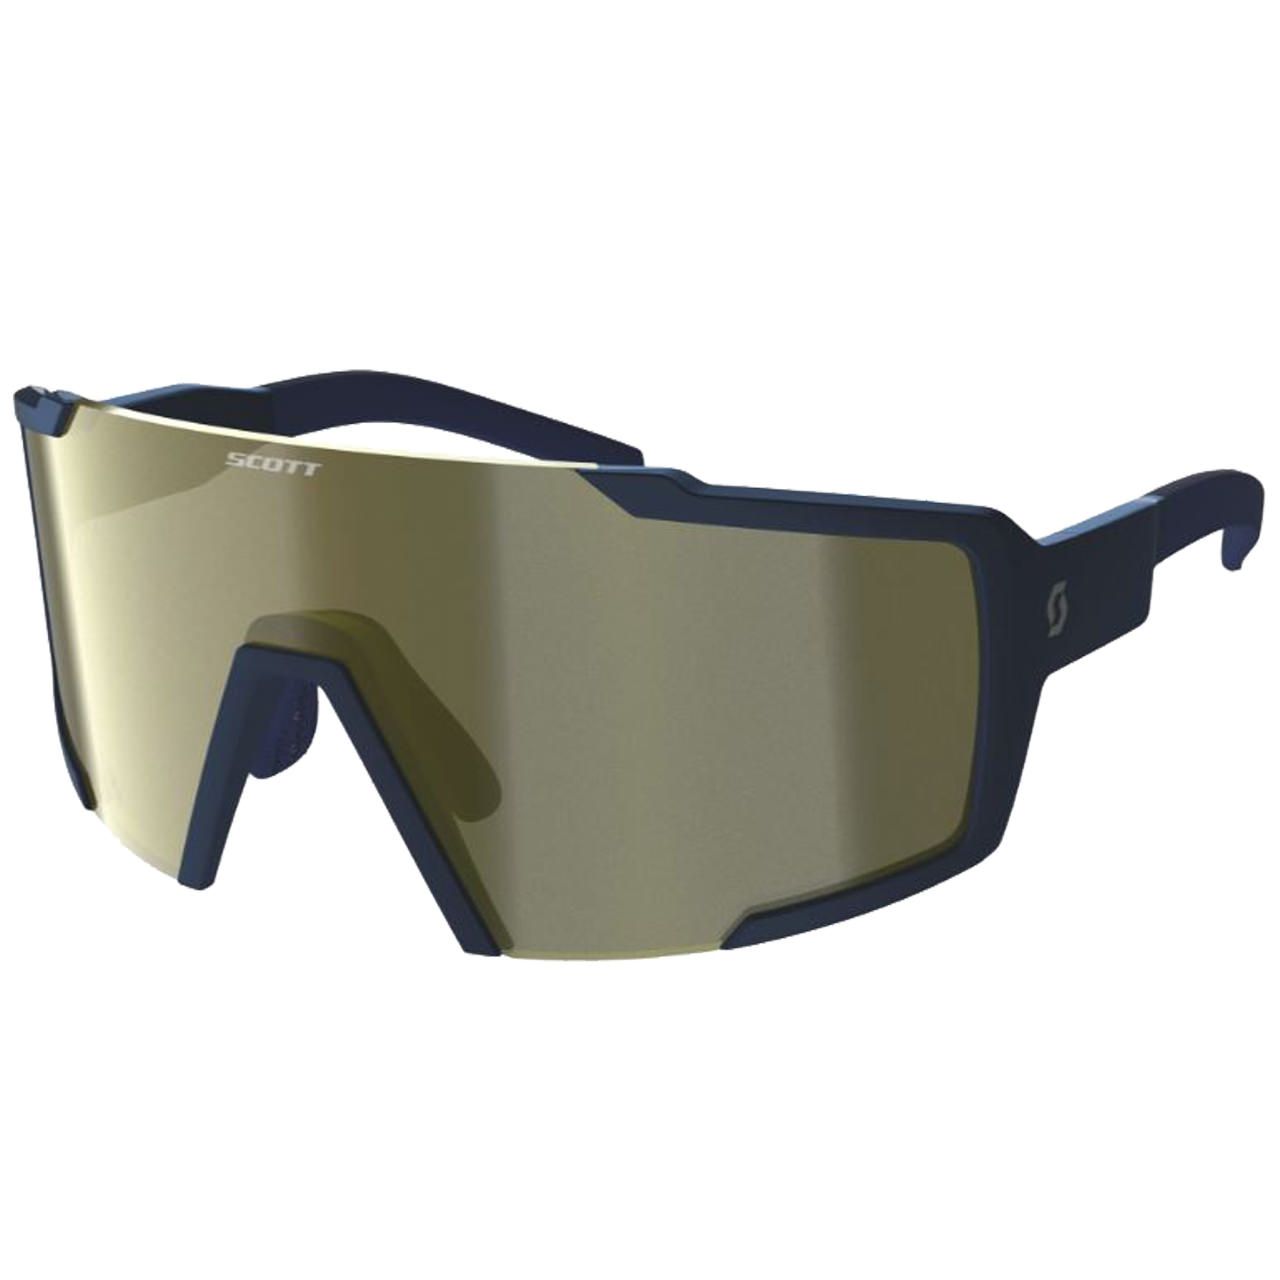 Scott Shield Compact Sunglasses marble black/teal chrome von Scott